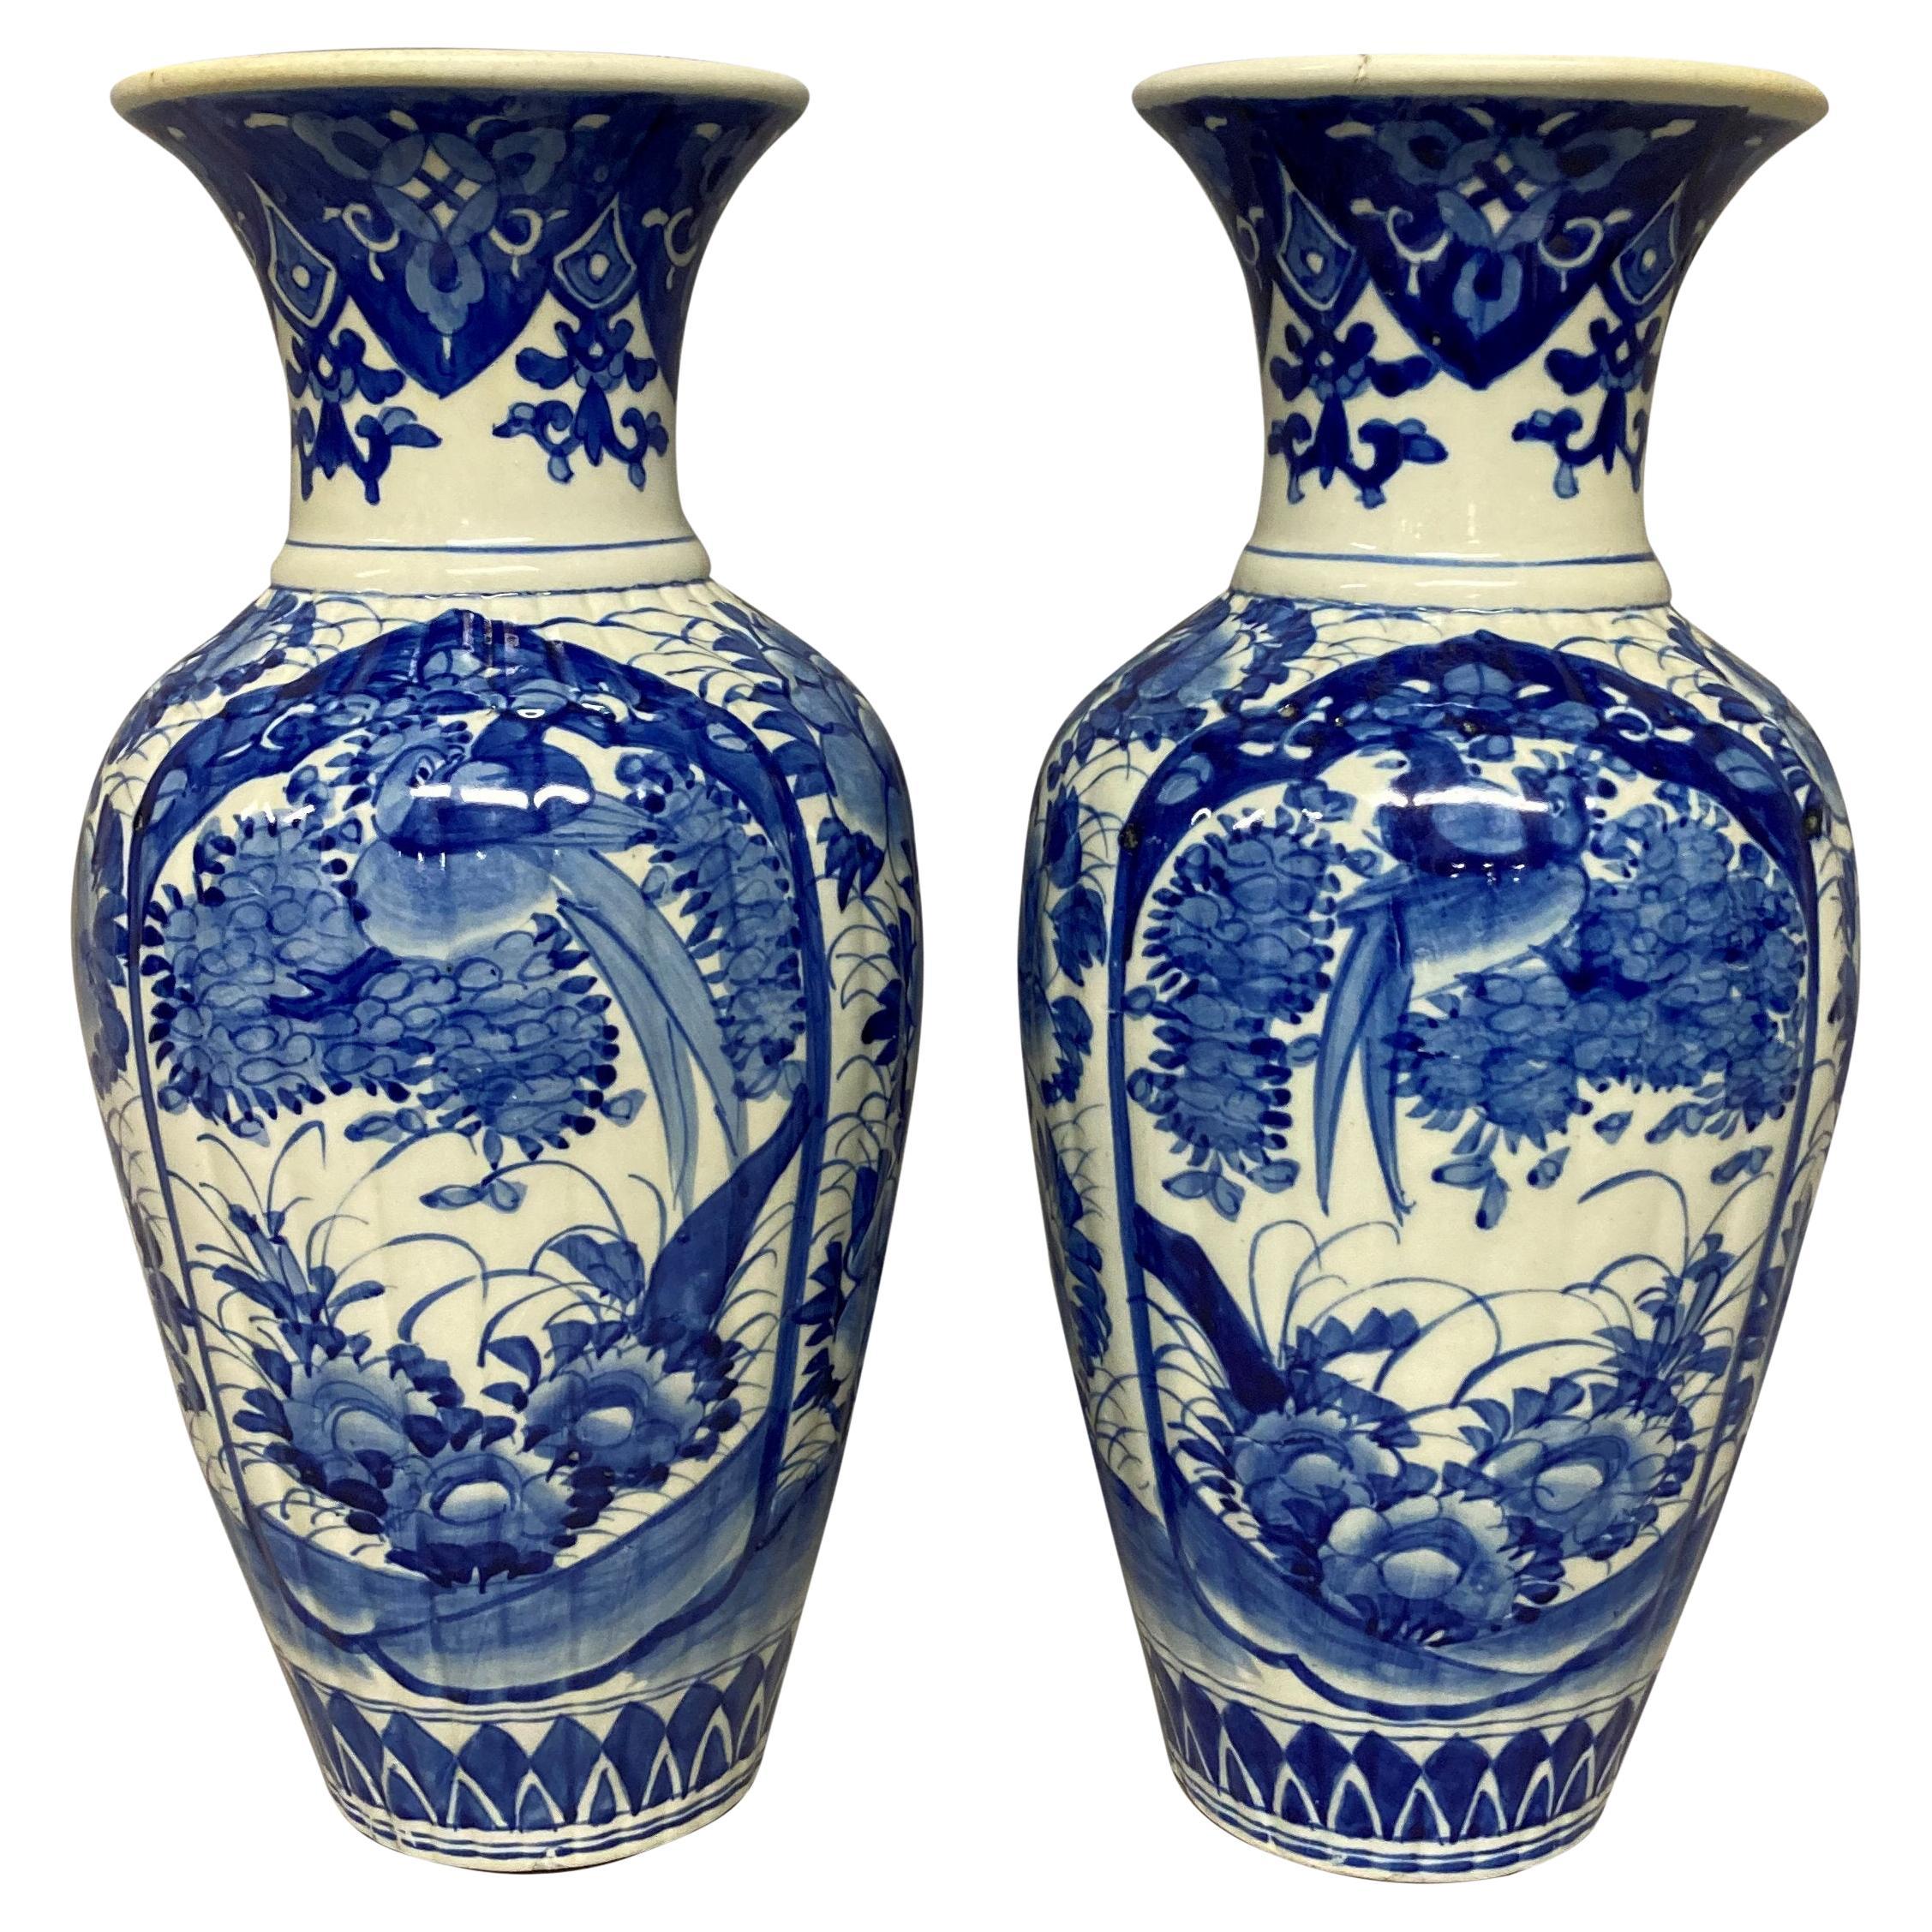 Paire de vases balustres chinois bleus et blancs du 19me sicle